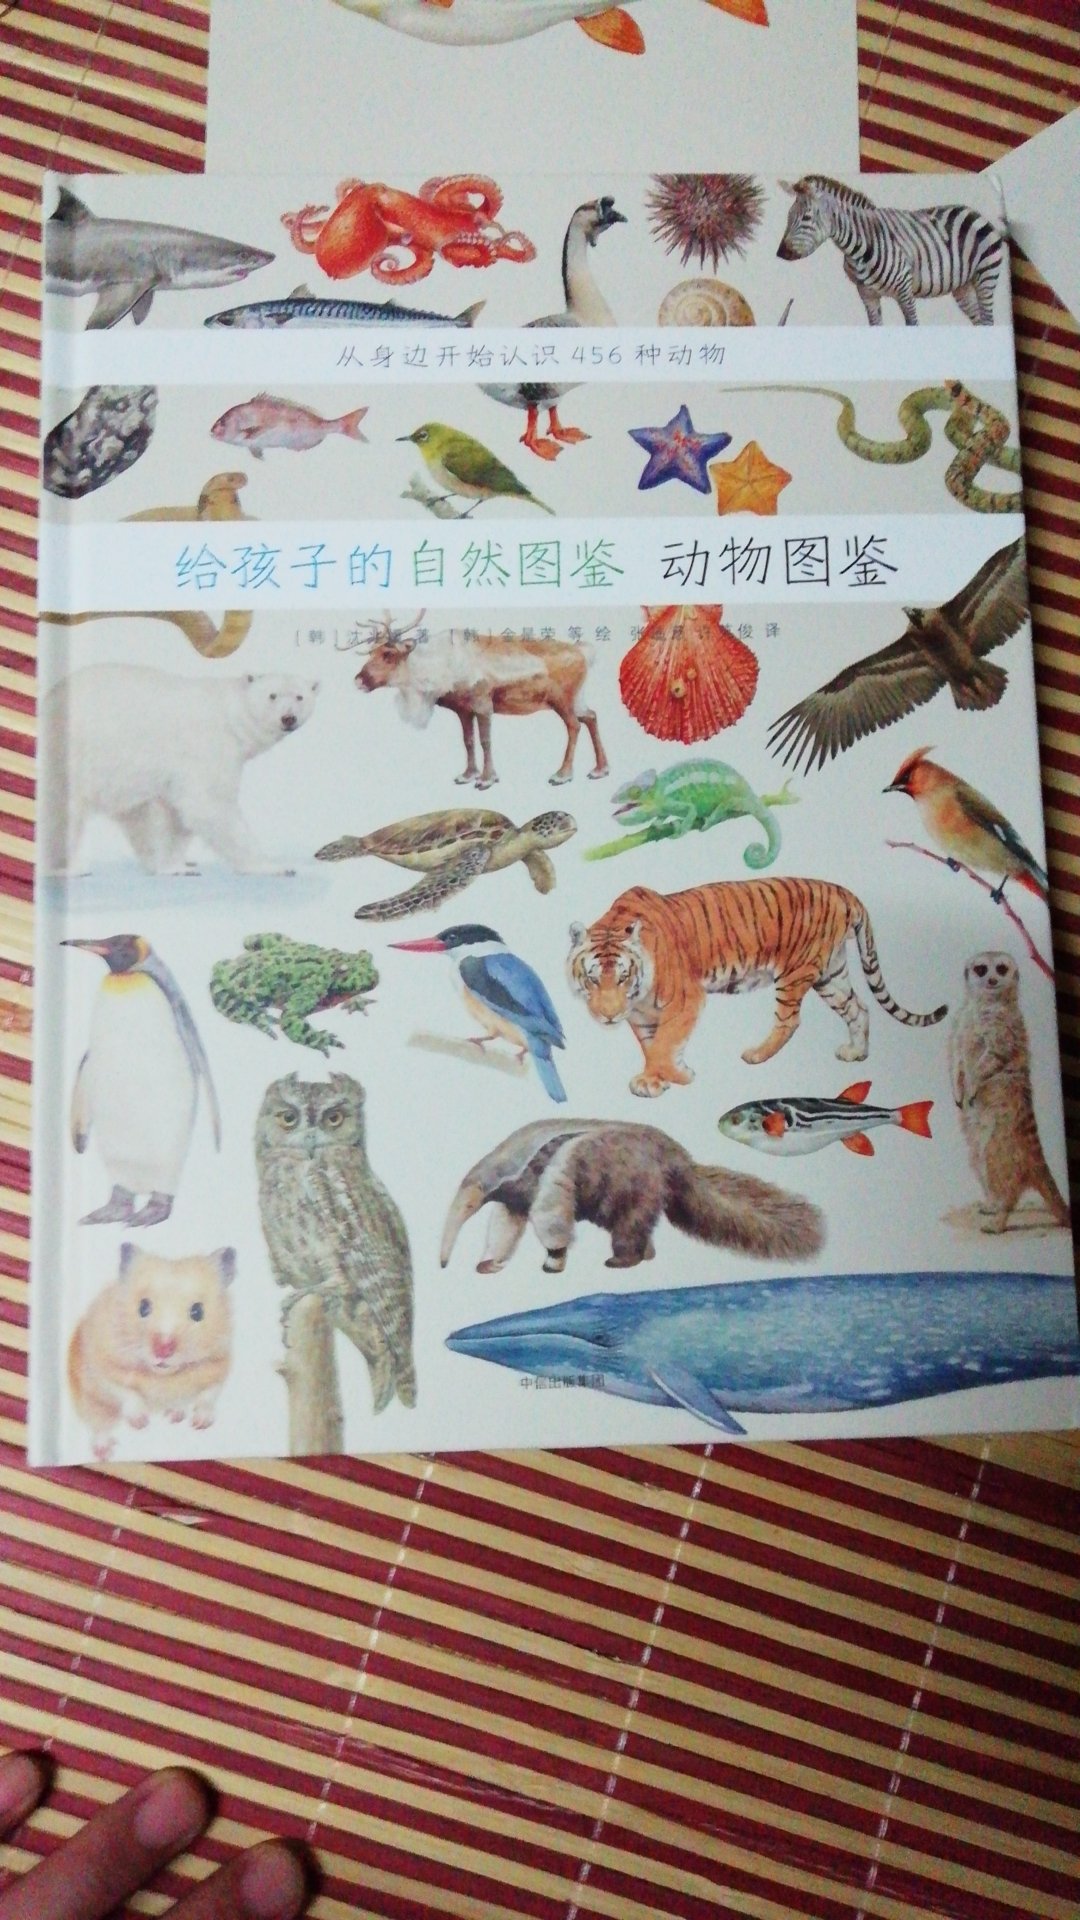 儿童动物百科全书，图很精美，文字描述也很生动，适合亲子共读